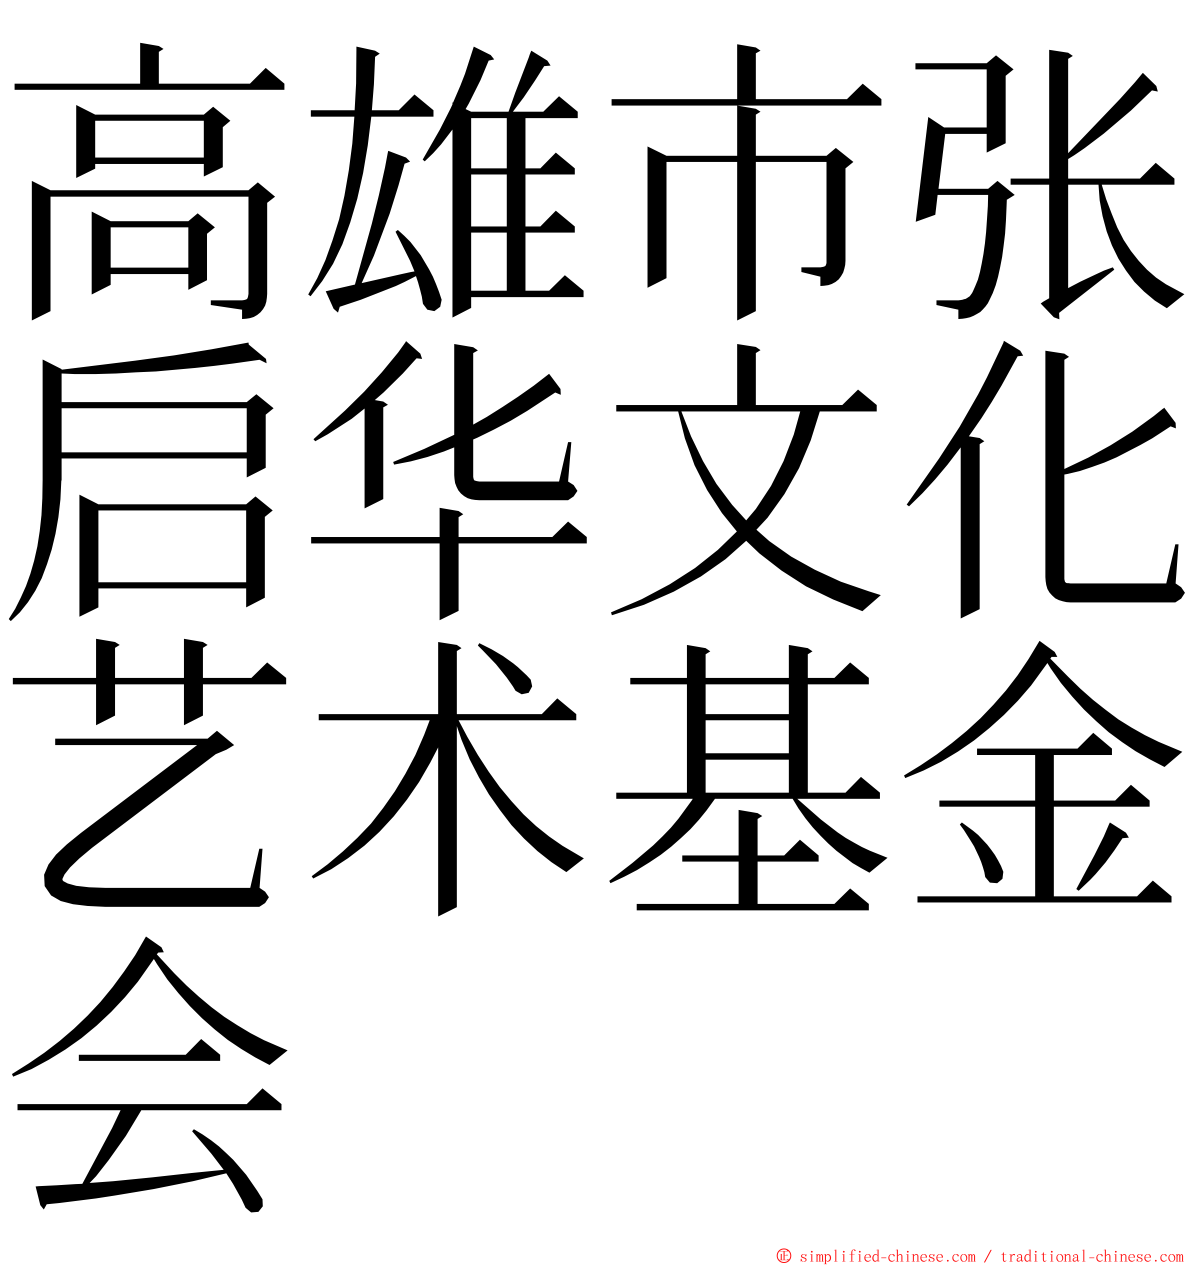 高雄市张启华文化艺术基金会 ming font